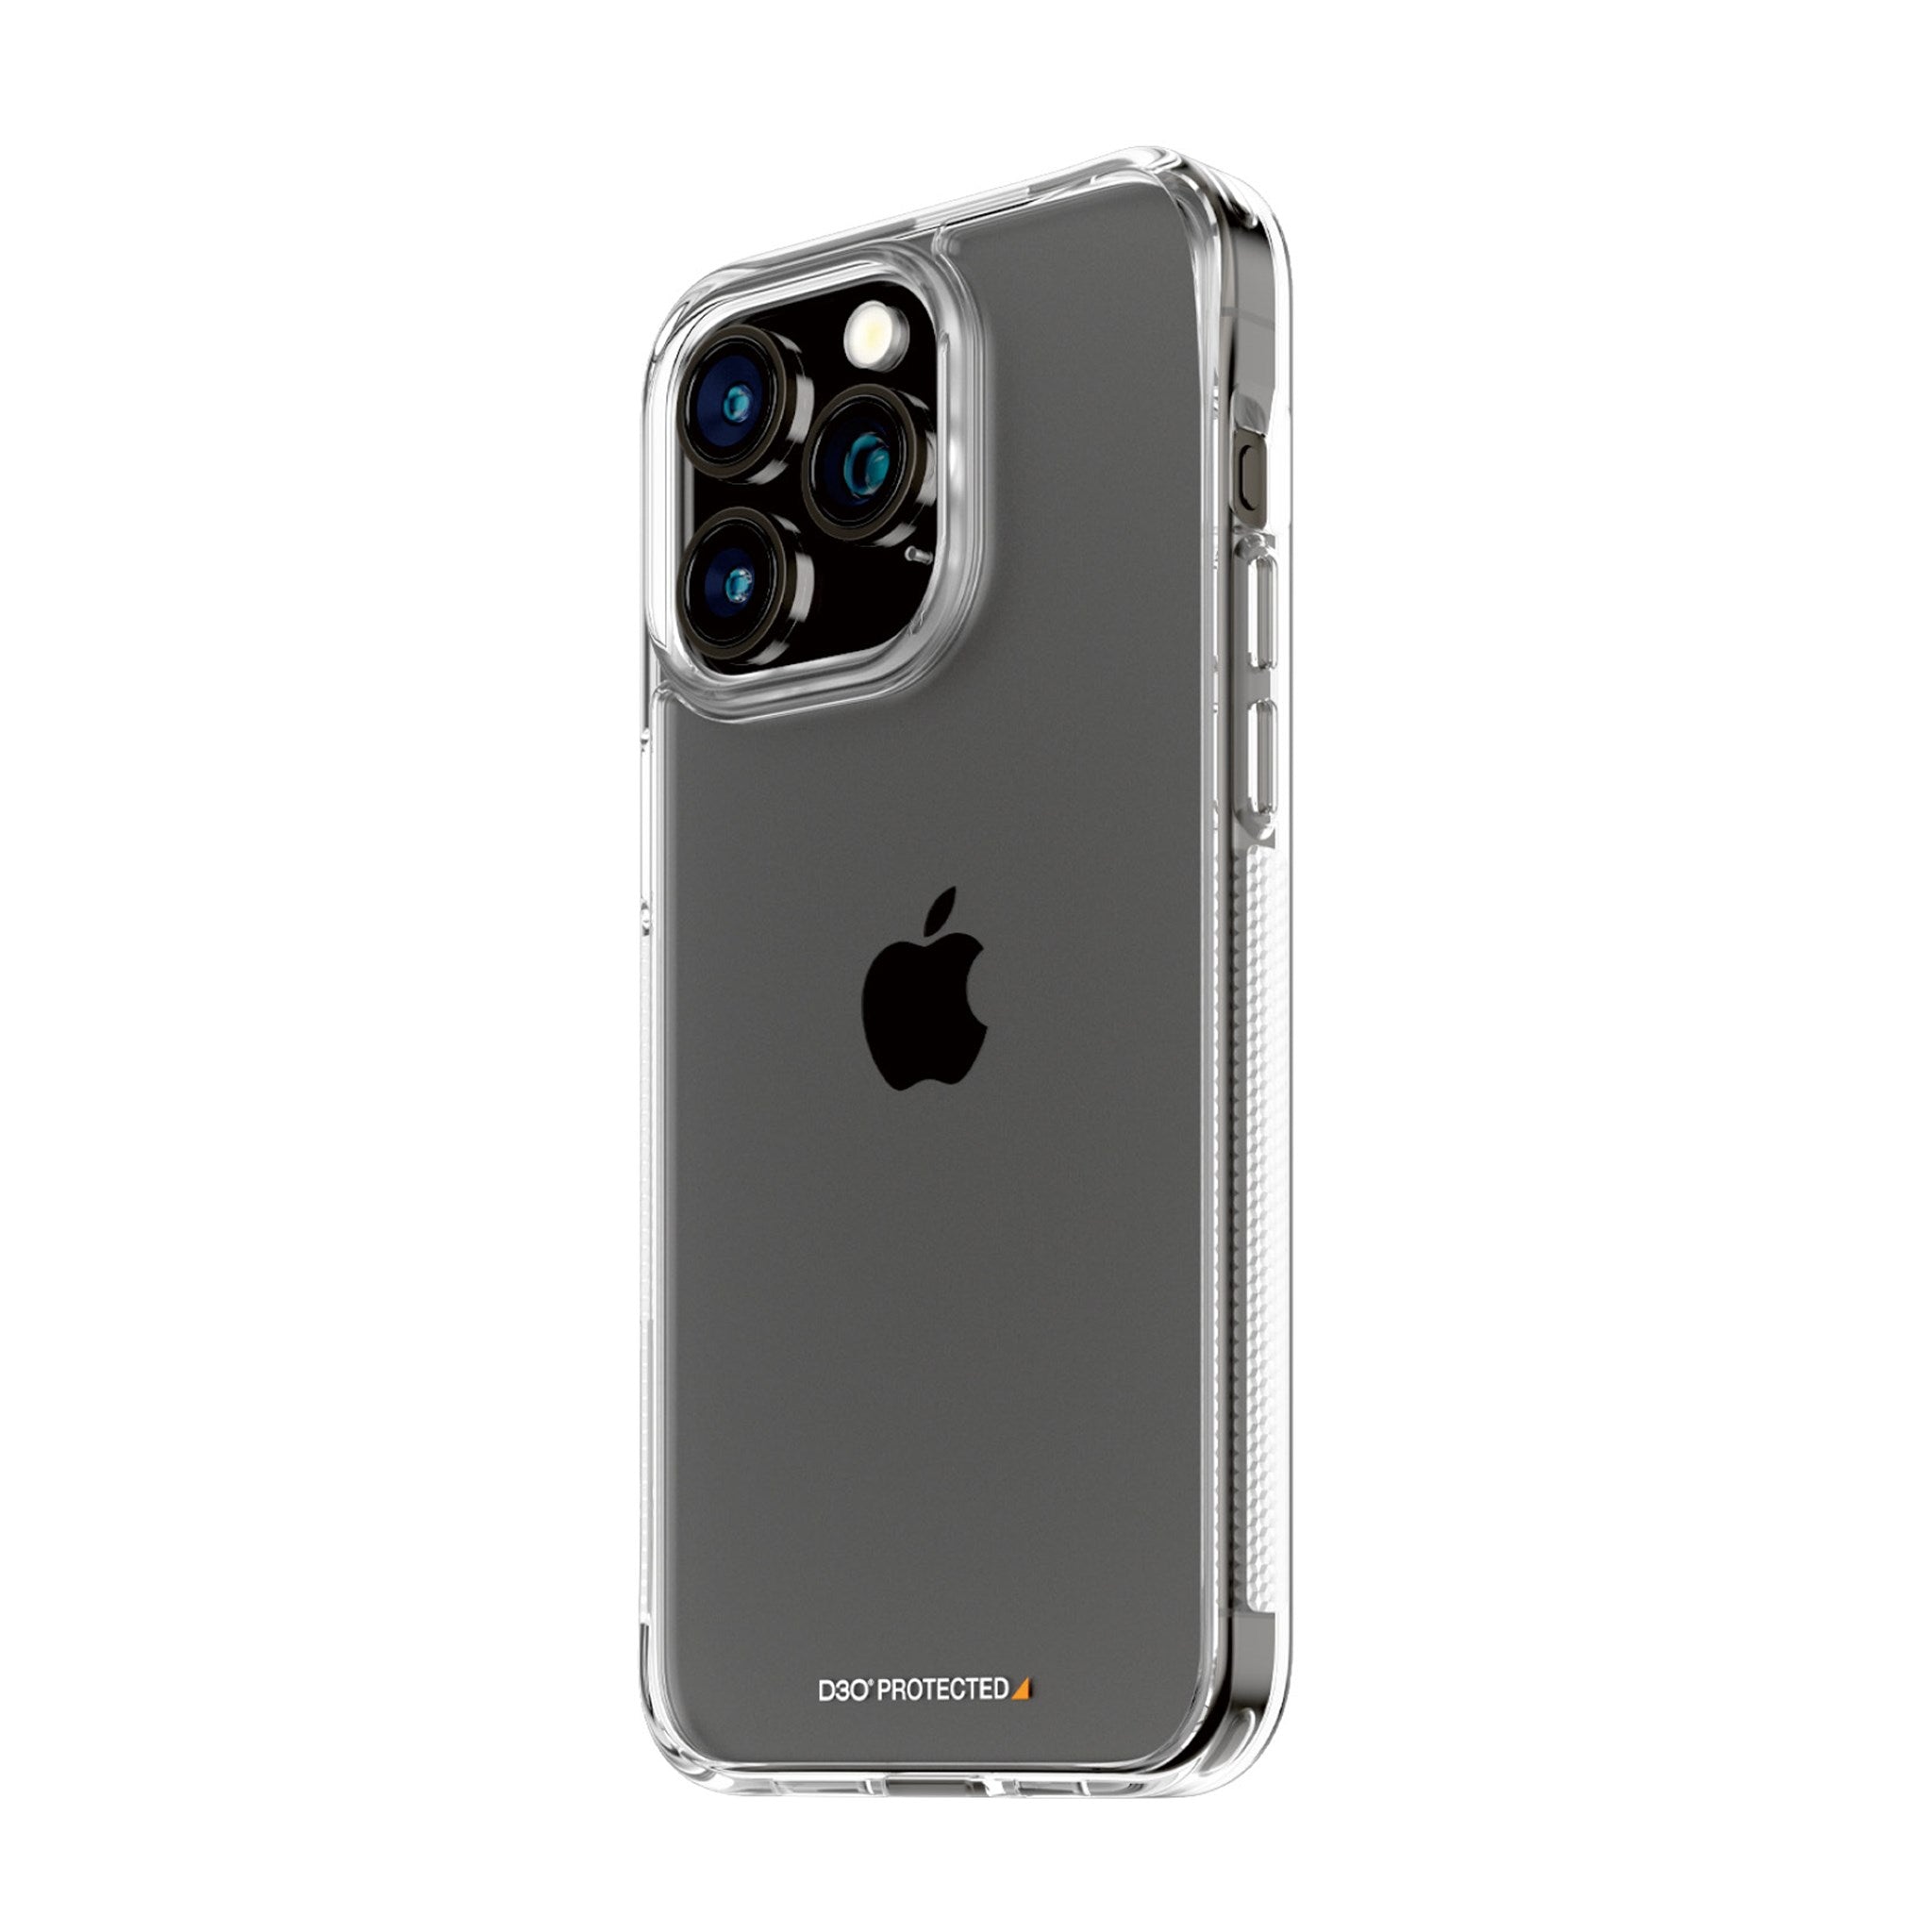 iPhone 15 Pro Saii 3D Premium Tempered Glass Screen Protector - 2 Pcs.